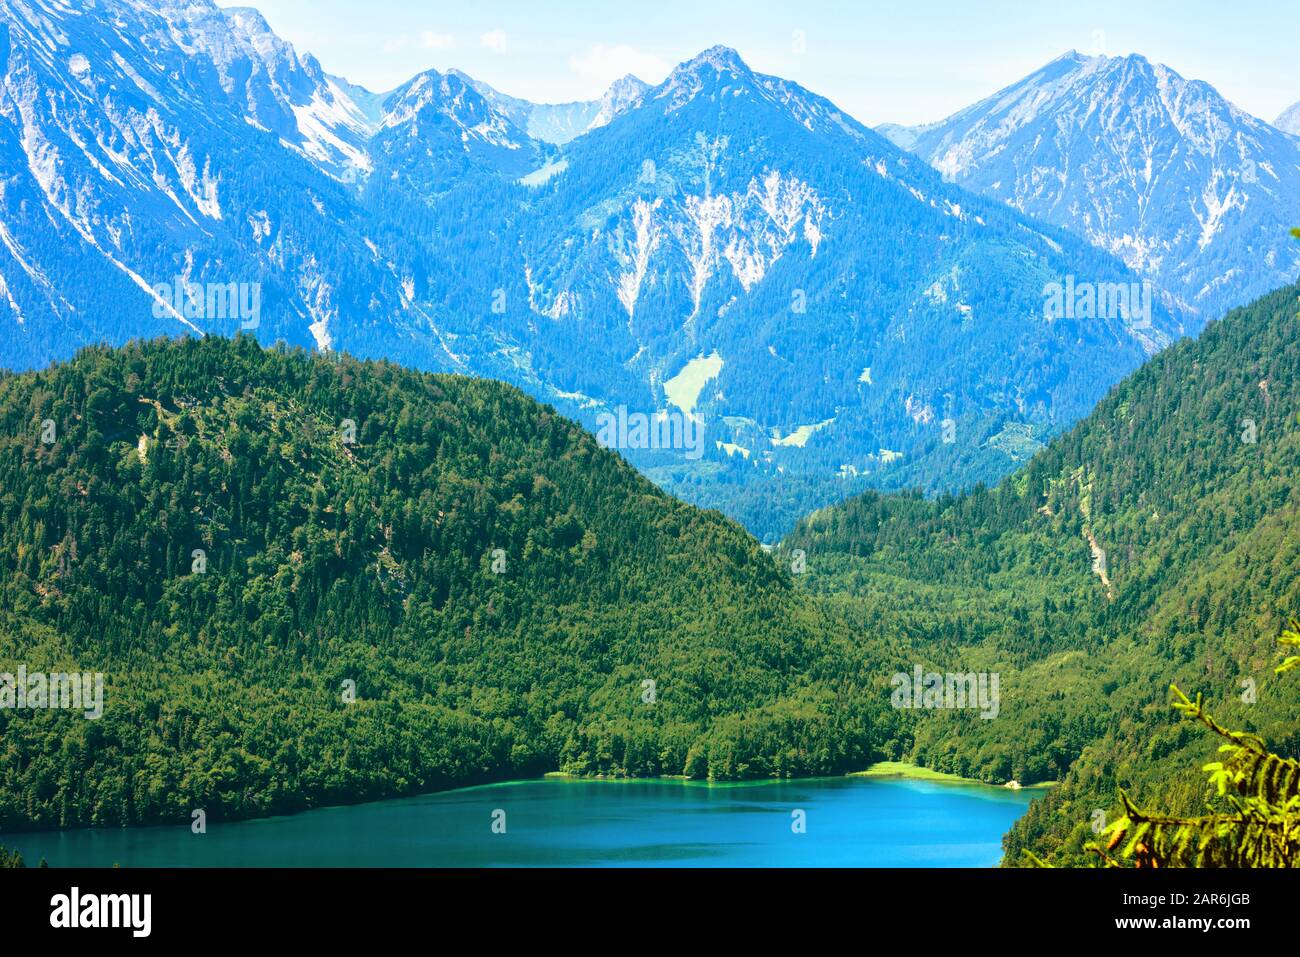 Paesaggio di monti alpini, Germania. Bellissimo scenario di Alpi con cime innevate in estate. Paesaggio montano con un bel lago nella foresta. Vista panoramica di Foto Stock